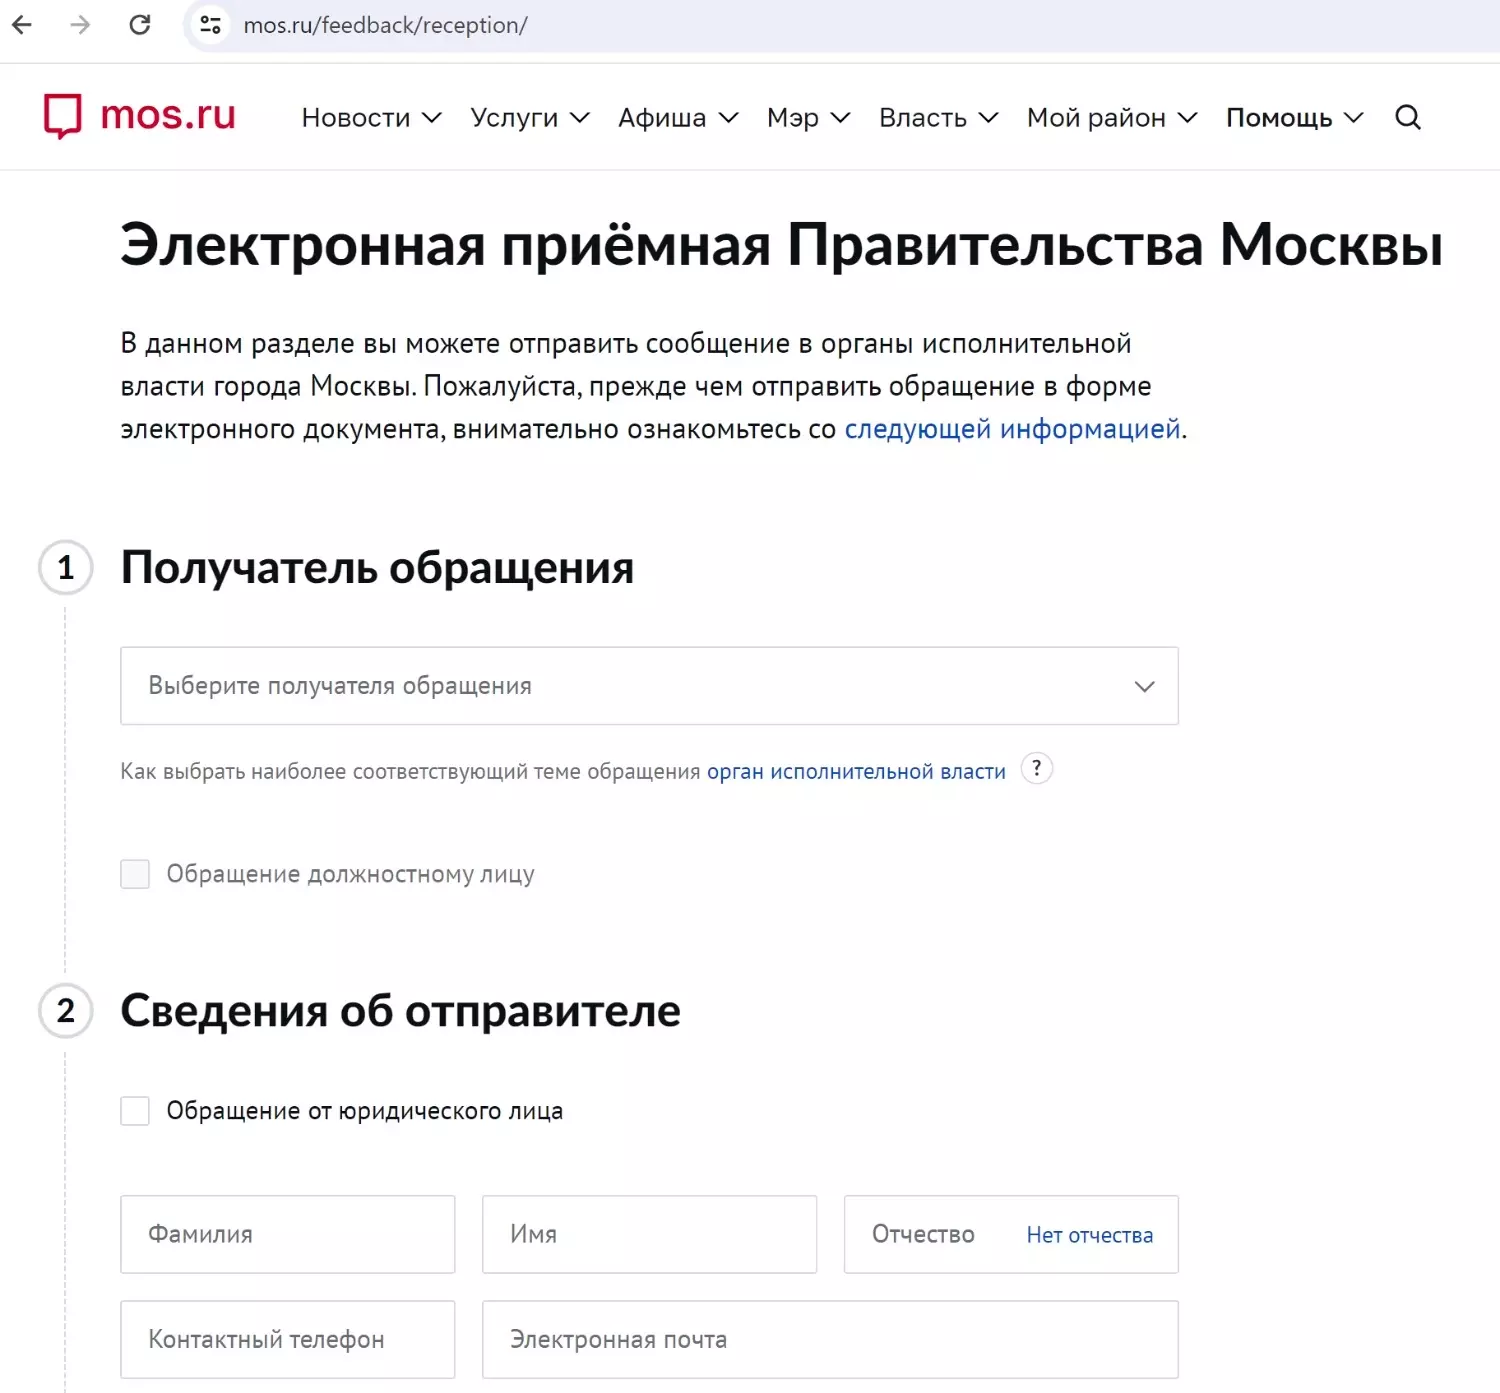 Через электронную приёмную на портале mos.ru можно отправить жалобу и в Мосжилинспекцию, и в Правительство Москвы